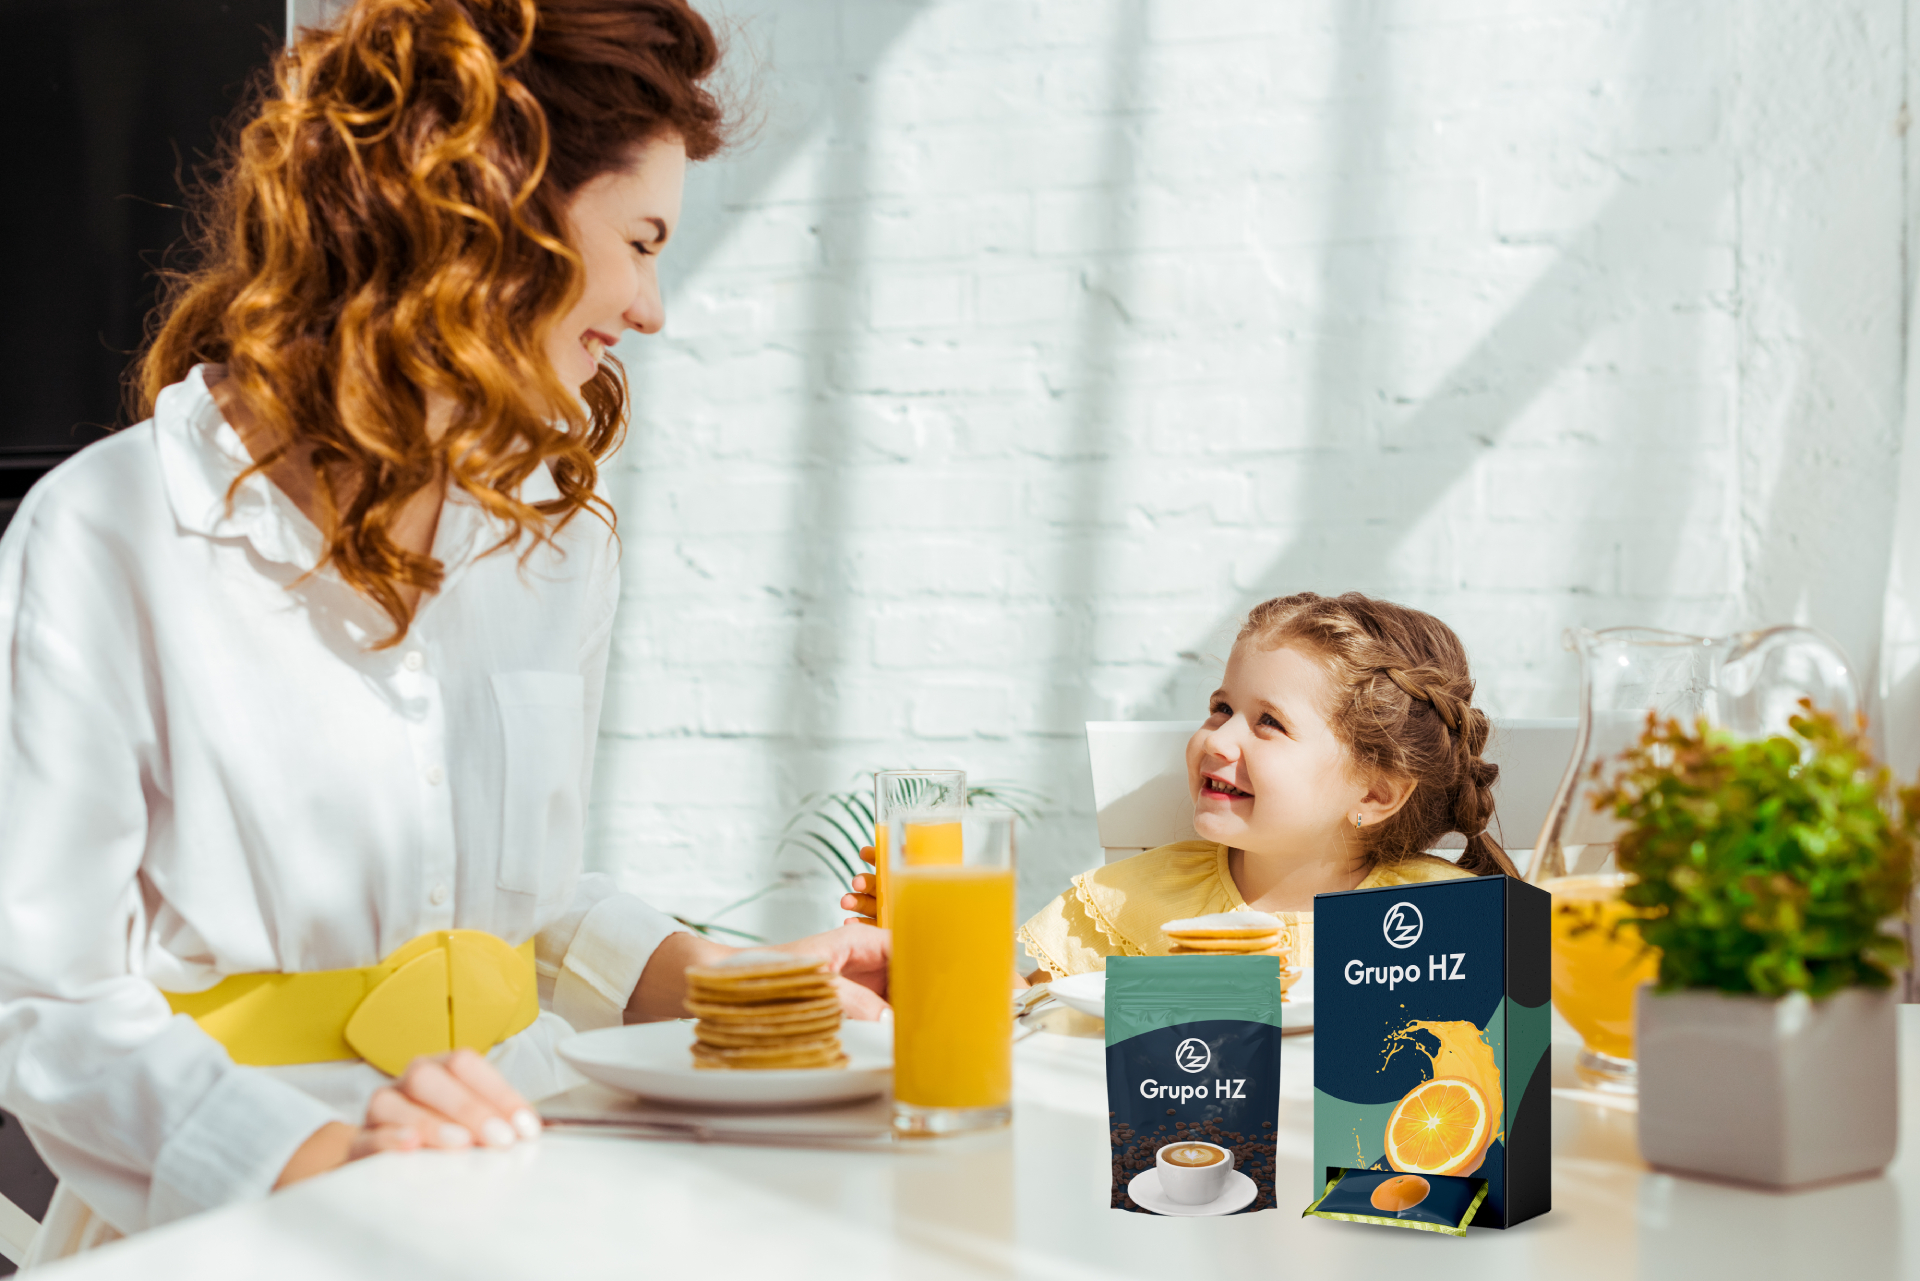 En la imagen se muestra una señora y su hija desayunando y hay dos envoltorios de grupohz de cafe y naranja.